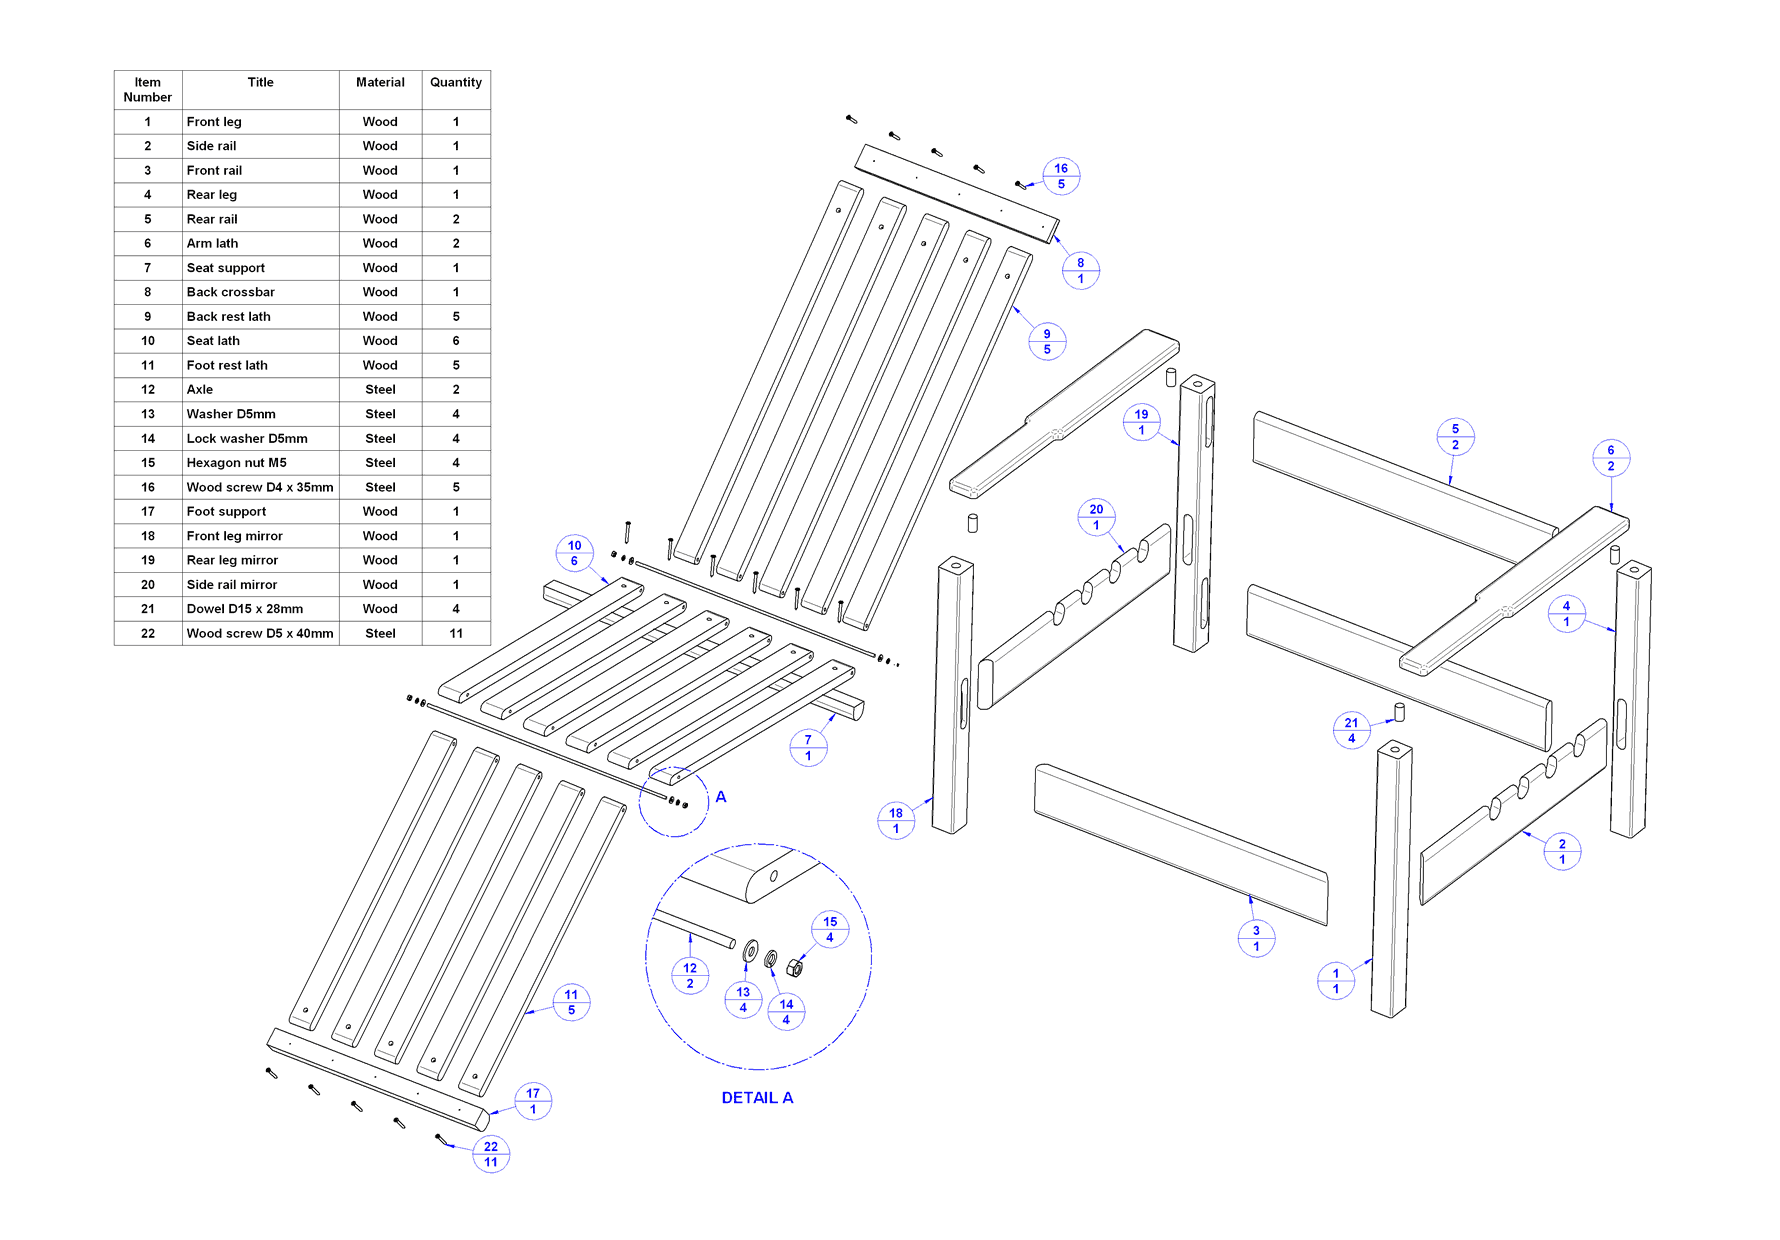 Garden adjustable wooden chair plan – Parts list